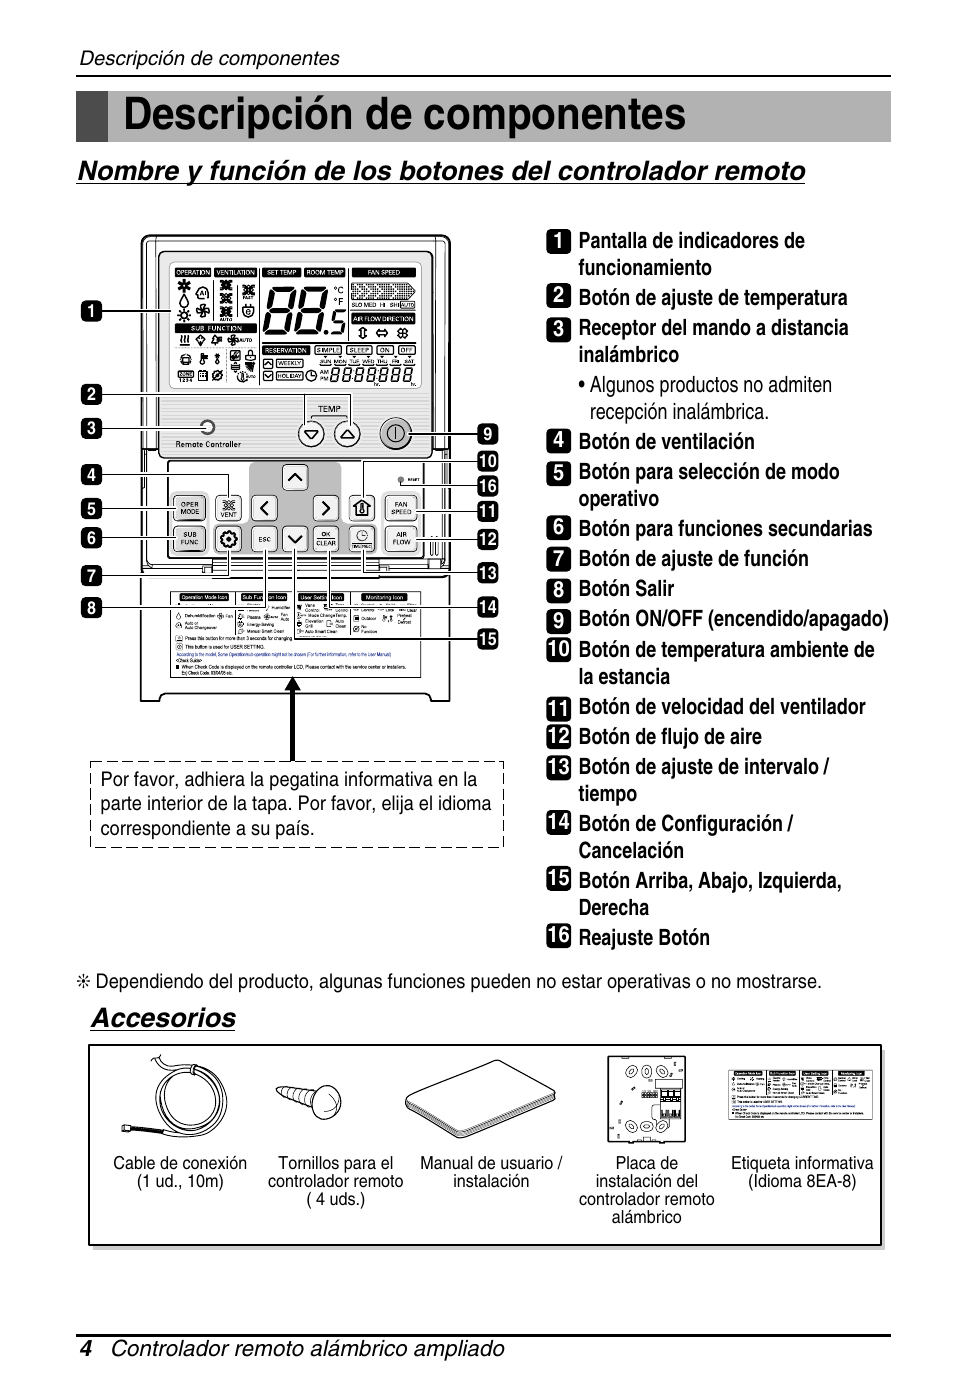 Descripción de componentes, Accesorios | LG PQRCUSA1 Manual del usuario | Página 4 / 55